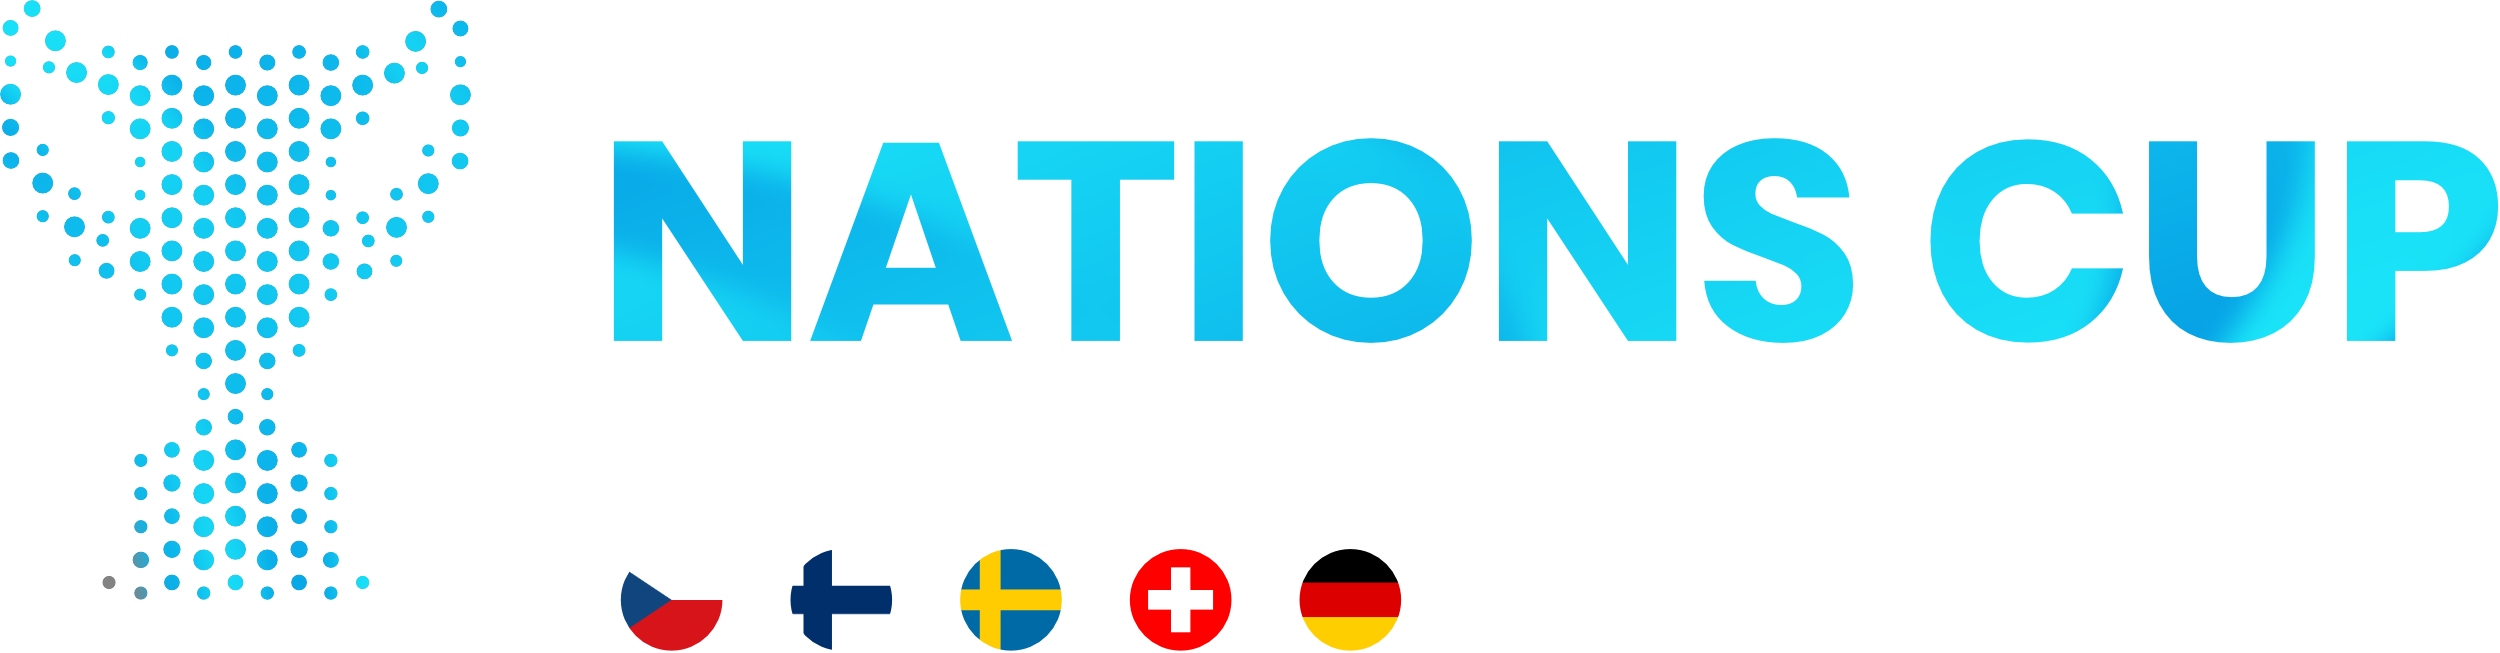 Nations Cup in Naumburg und Weißenfels